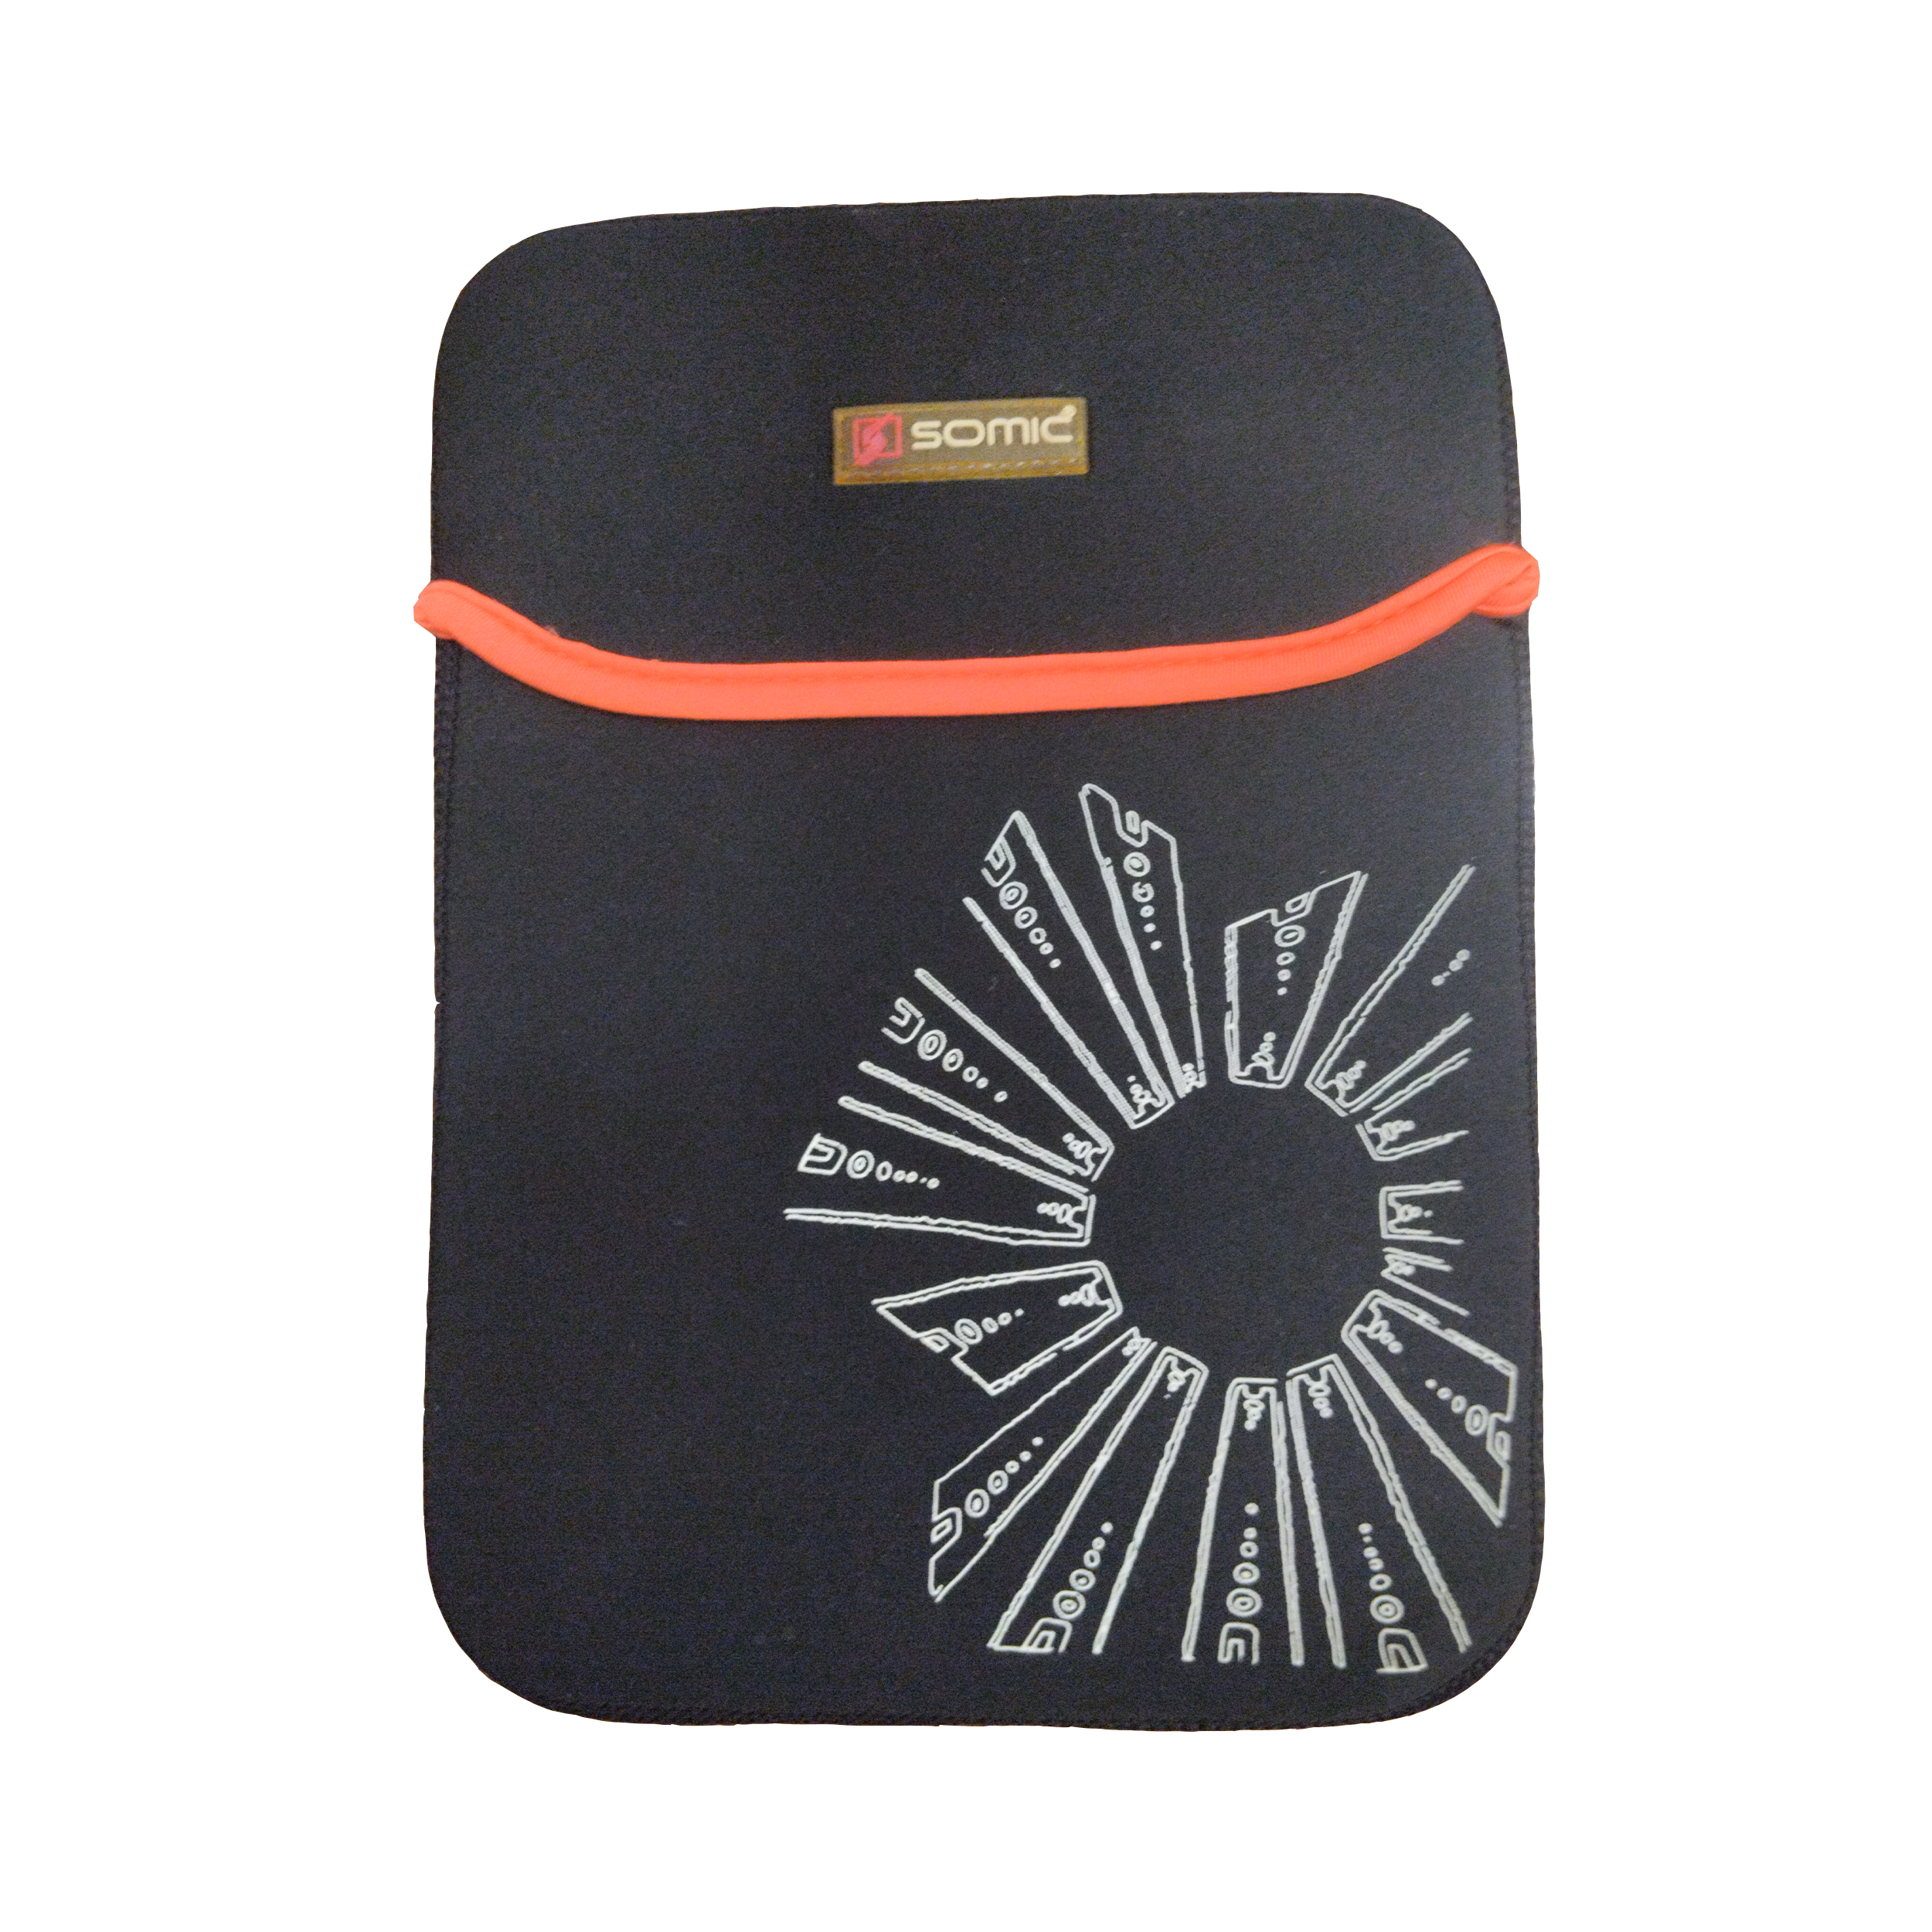 کیف سومیک مدل SMC010 مناسب برای تبلت 10 اینچی